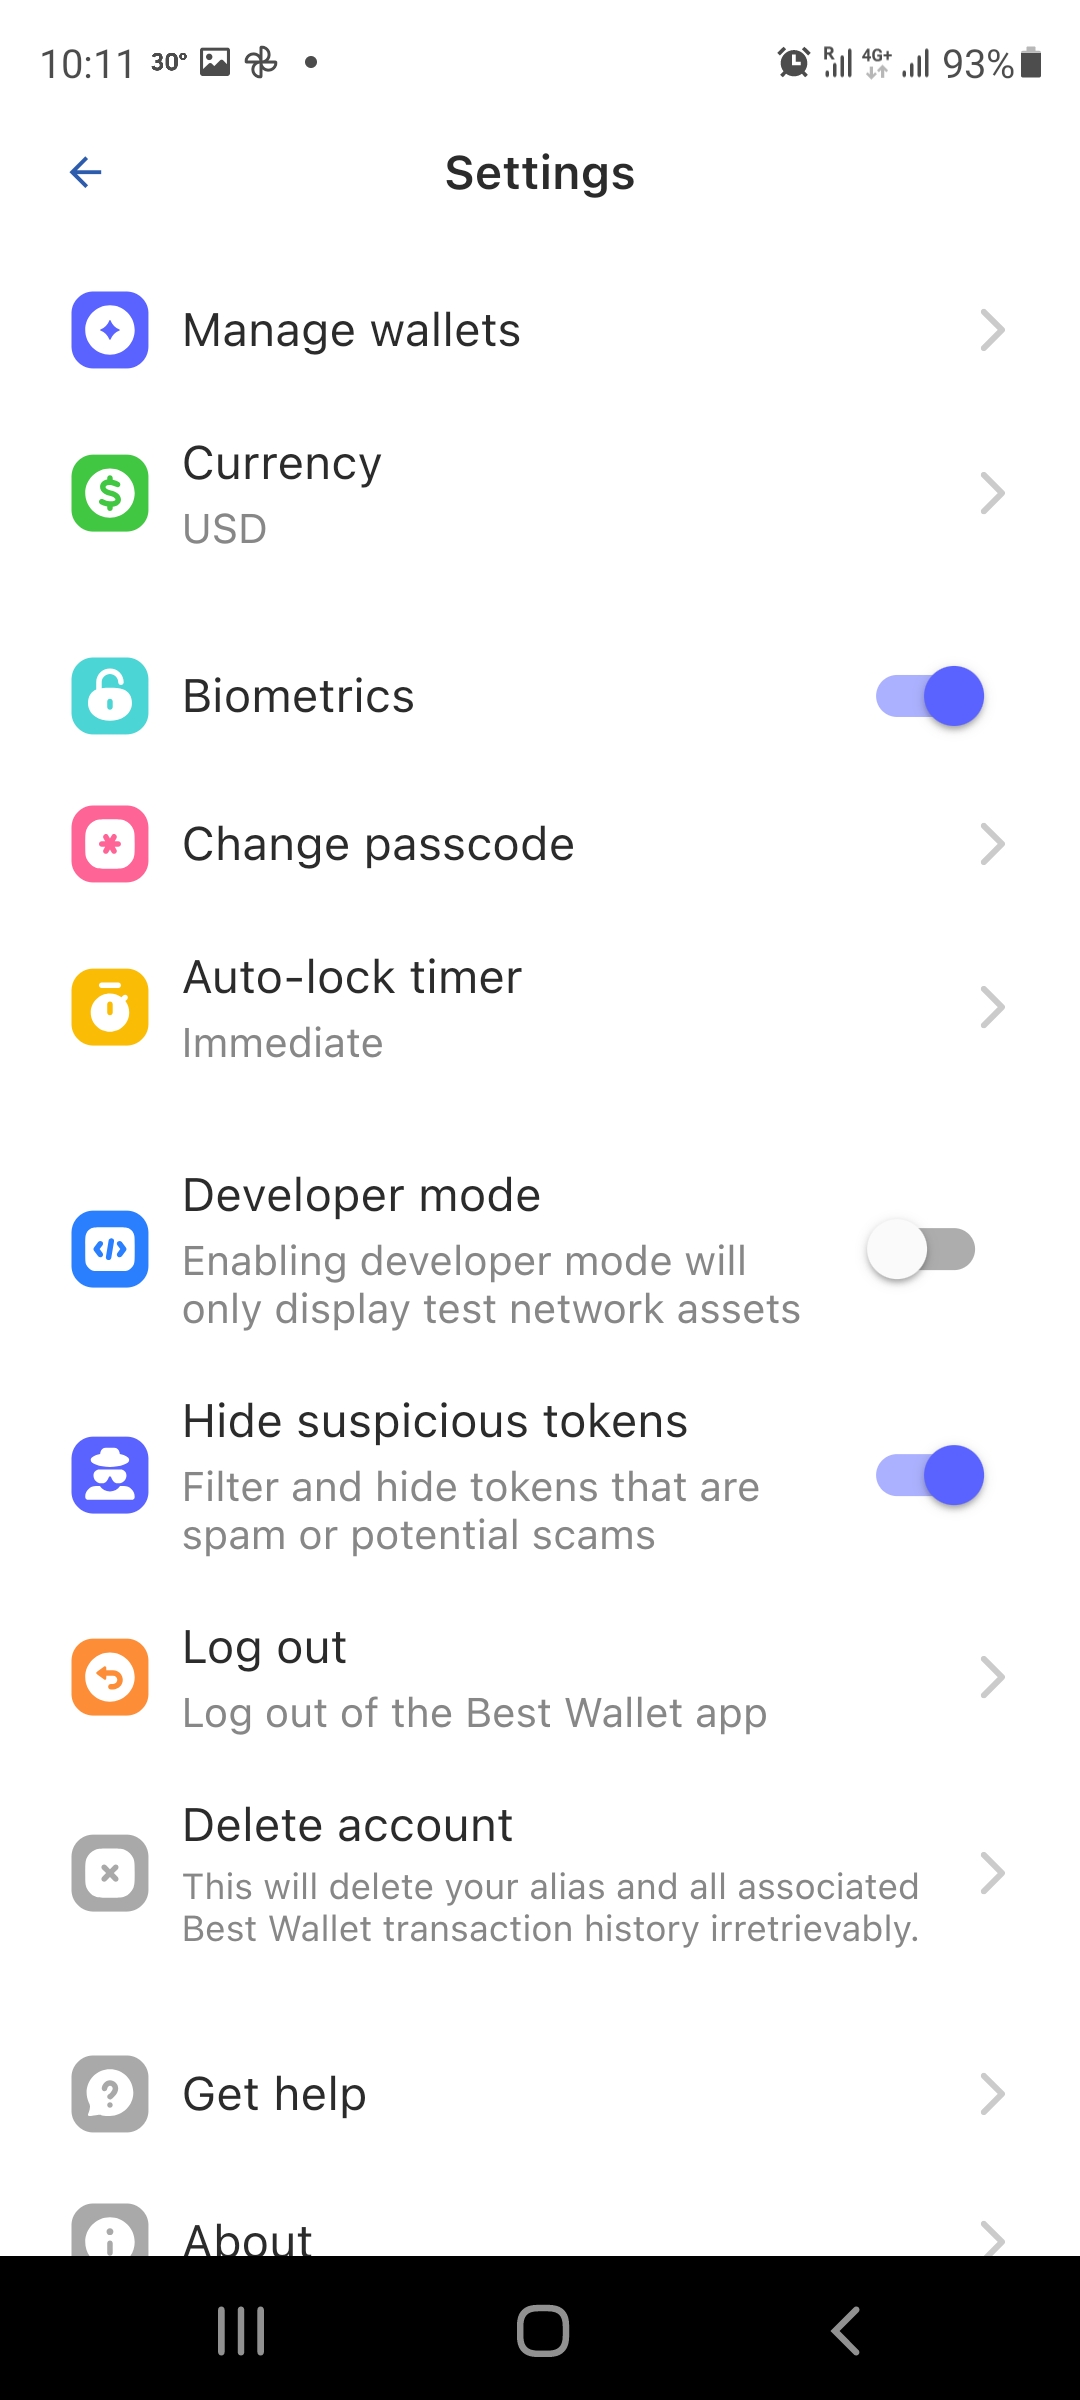 Best Wallet app settings